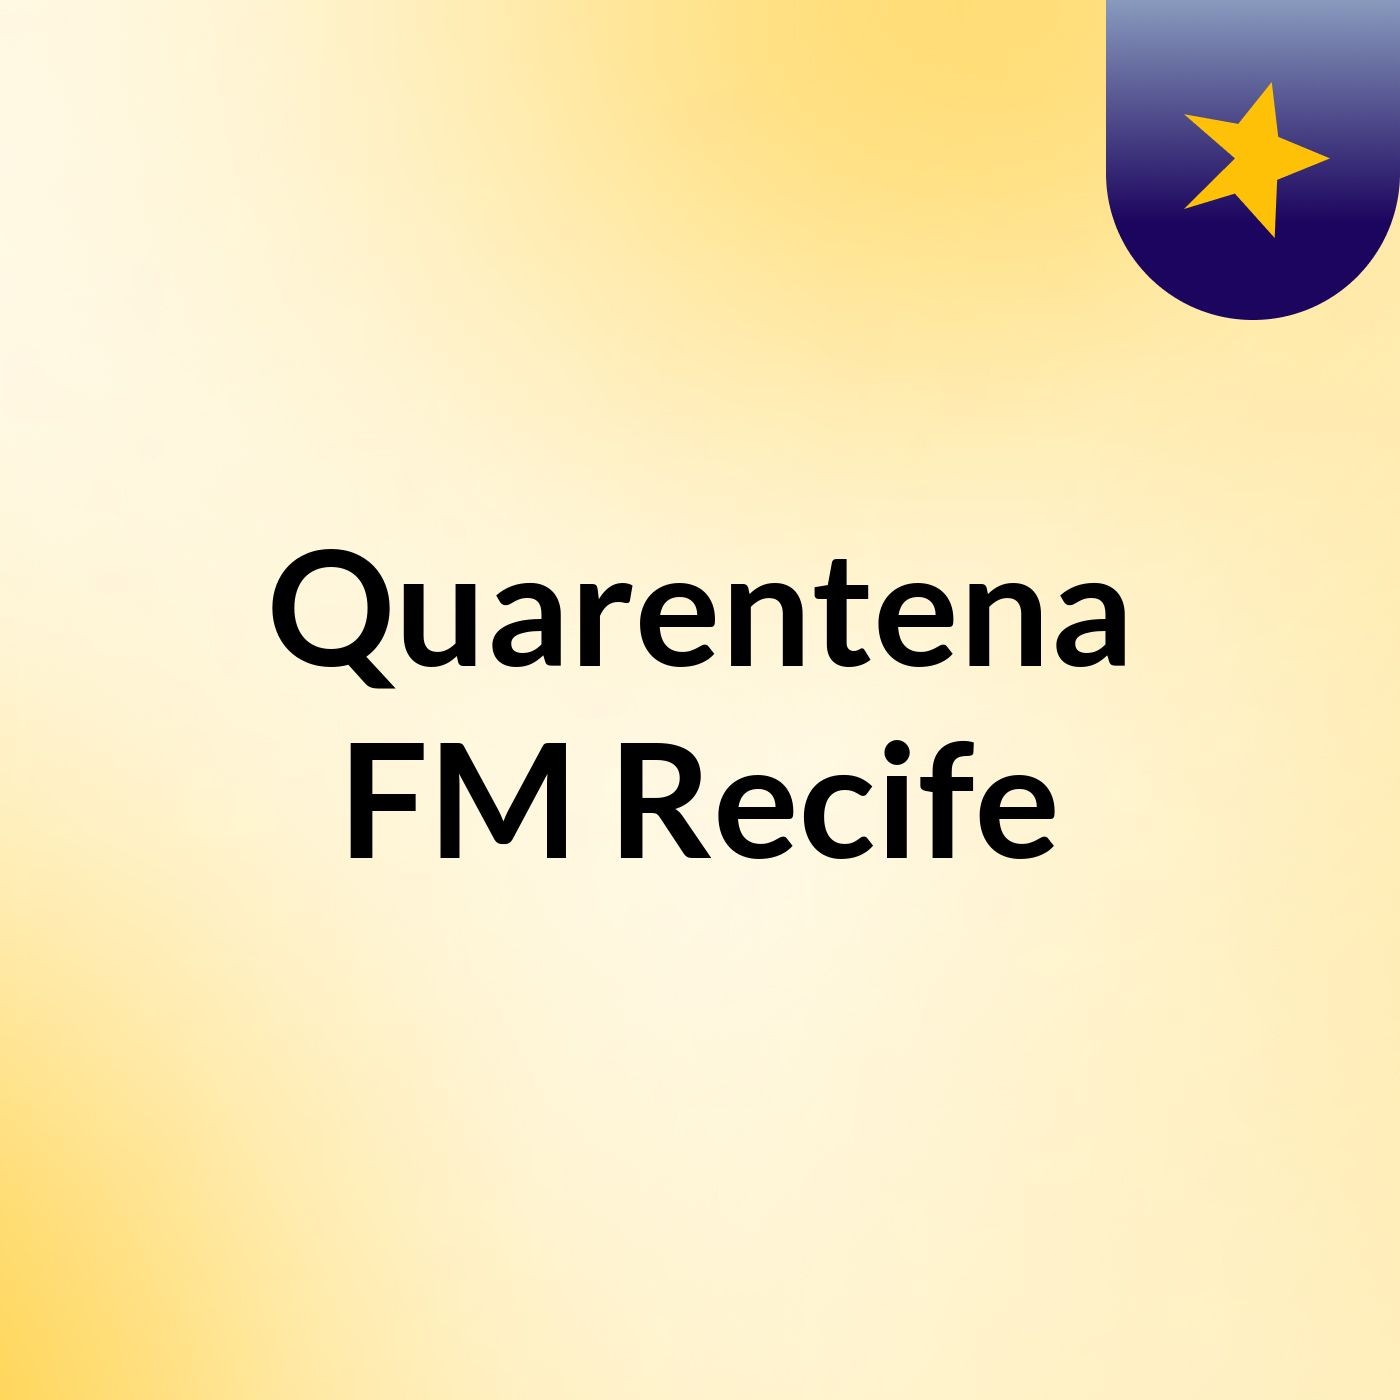 Quarentena FM Recife